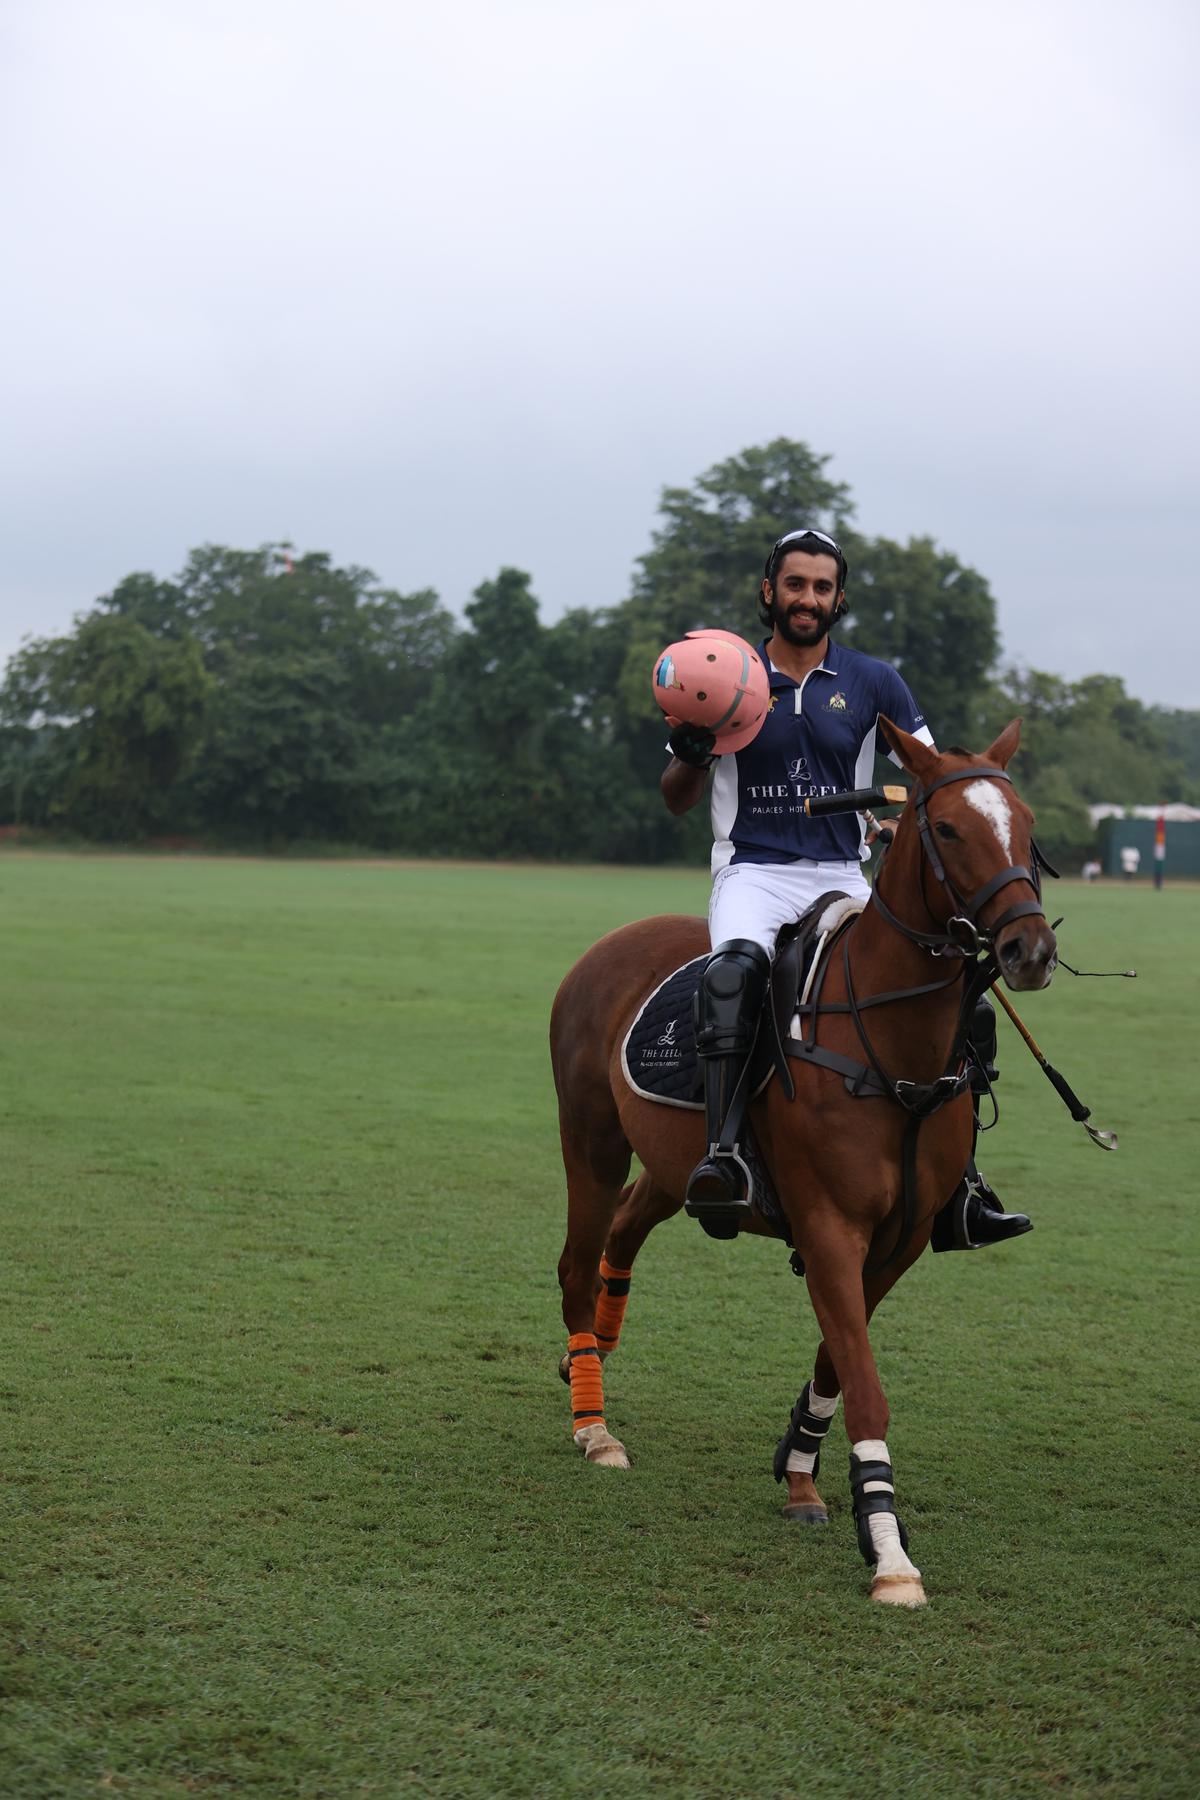 Sawai Padmanabh Singh, titular maharaja of Jaipur, at The Leela Maharaja Sawai Man Singh Polo Cup tournament